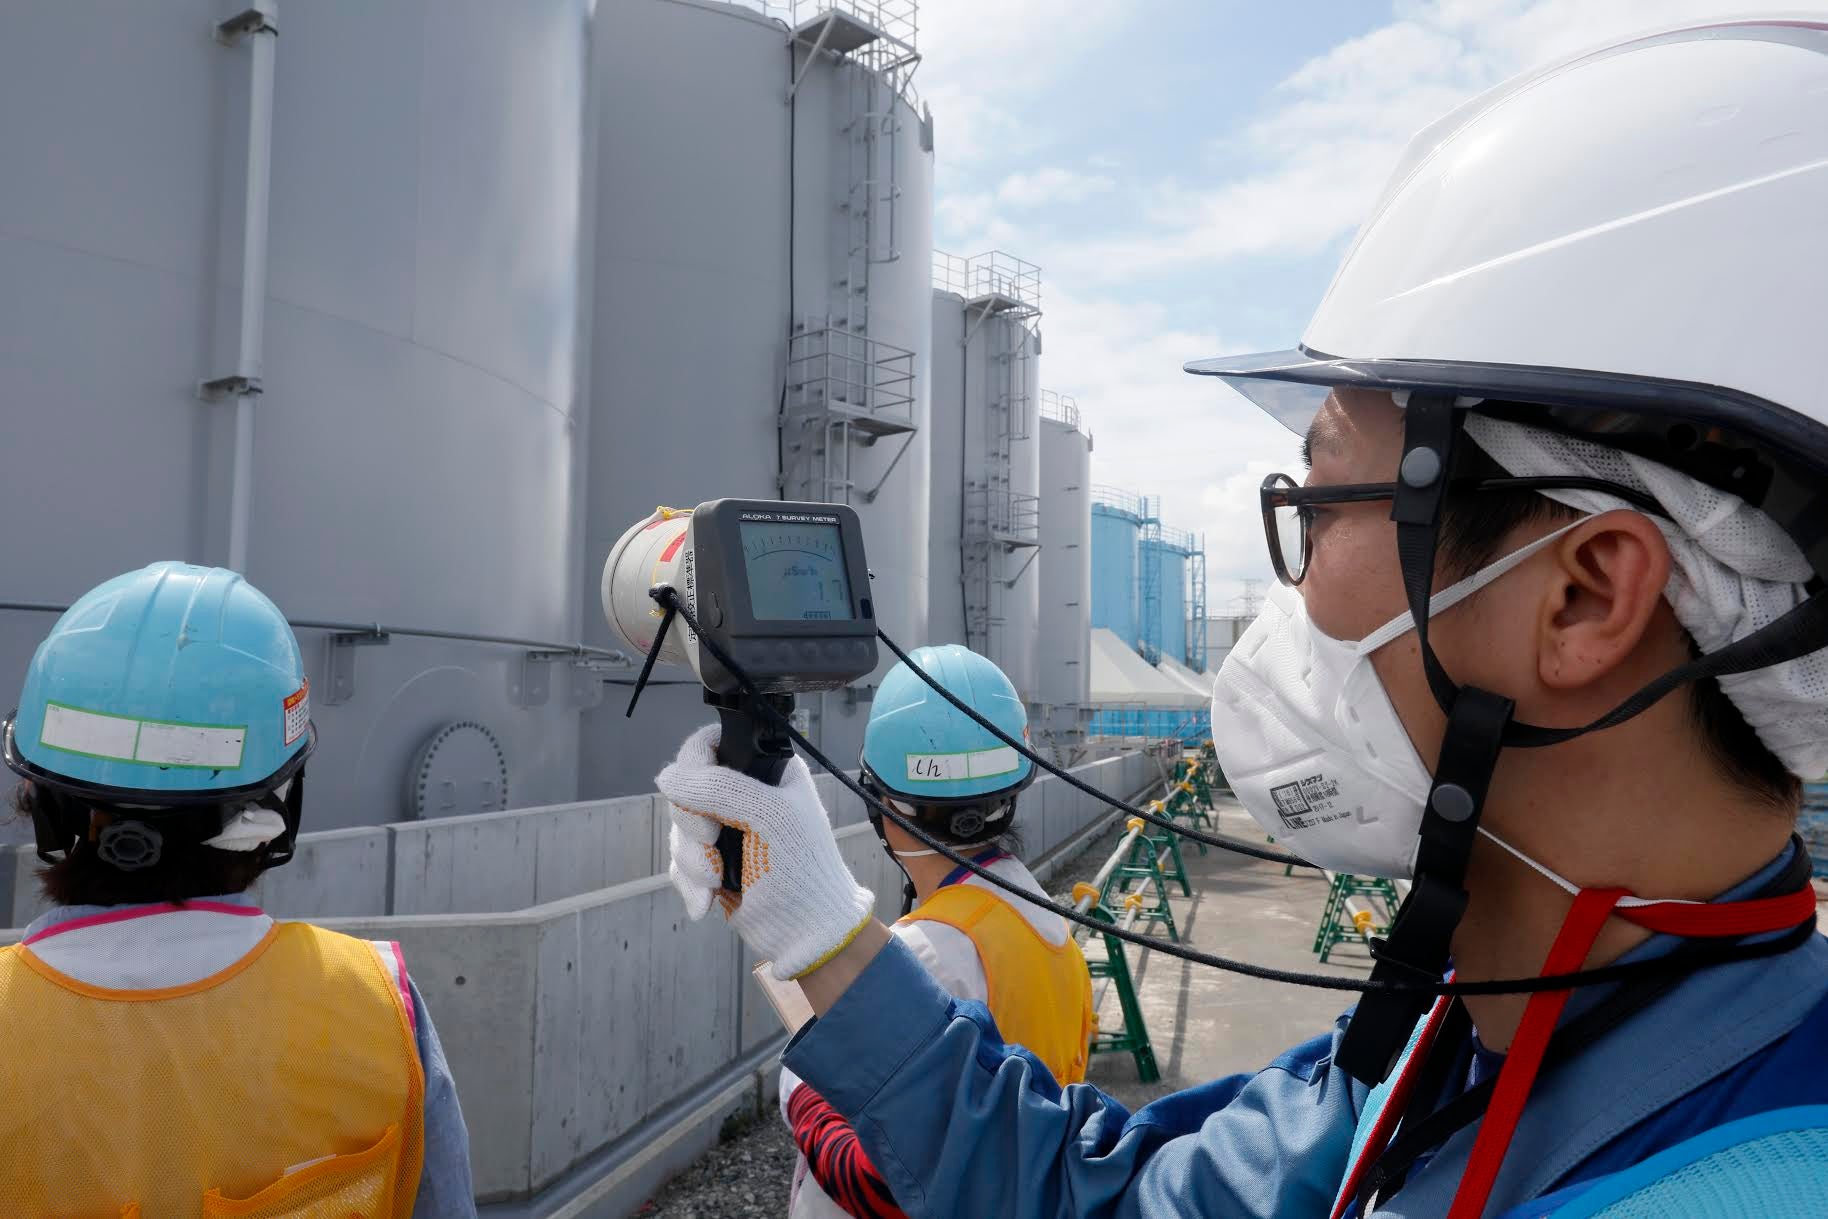 Measuring radiation levels at Fukushima